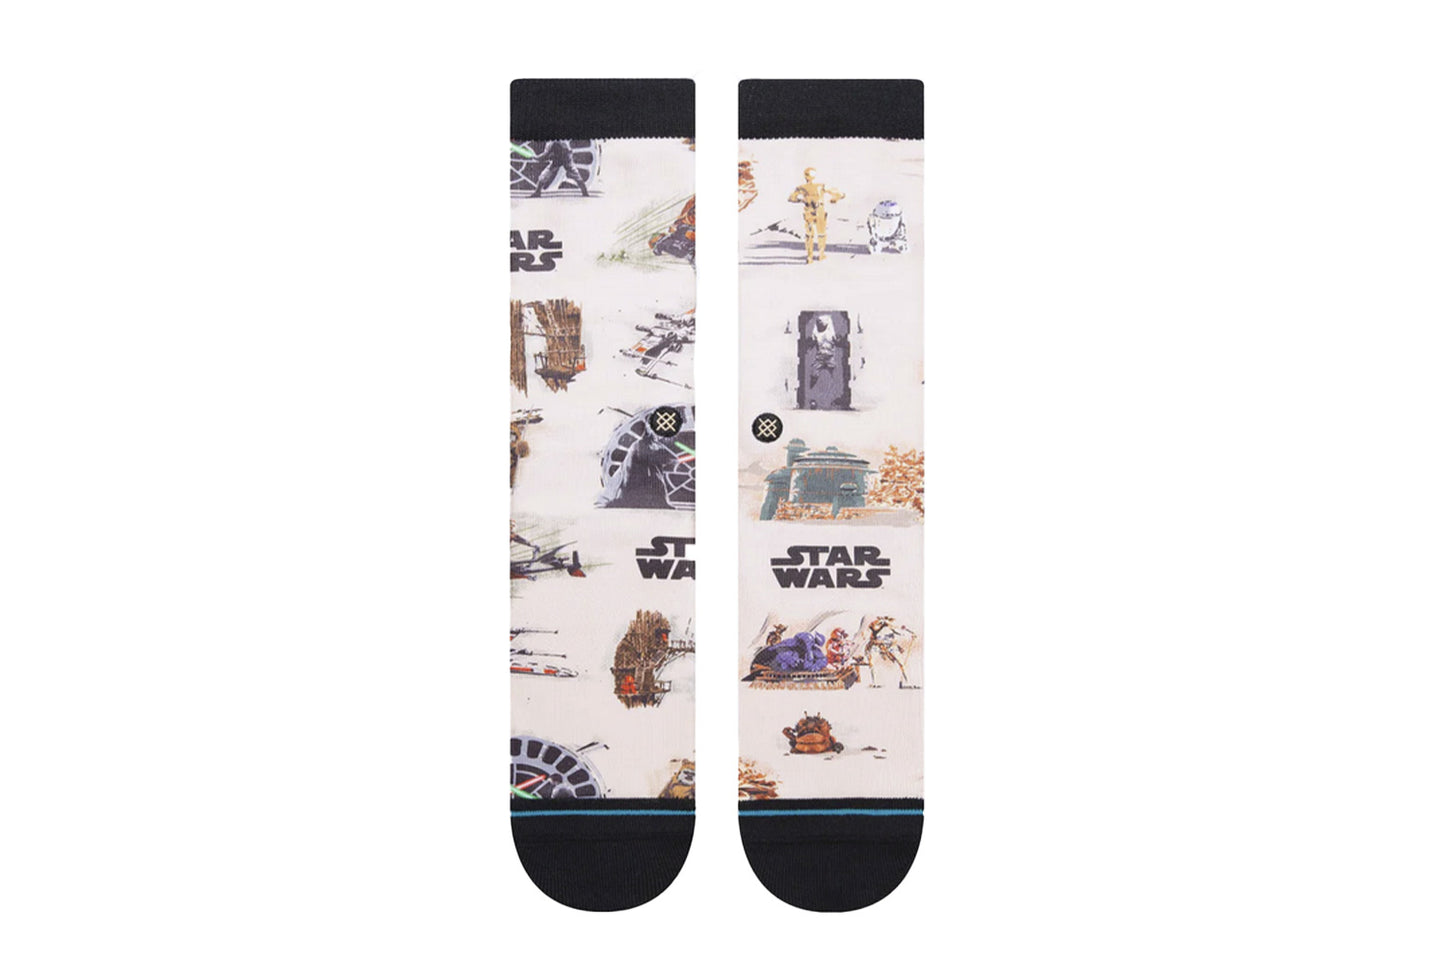 ROTJ Star Wars Crew Socken